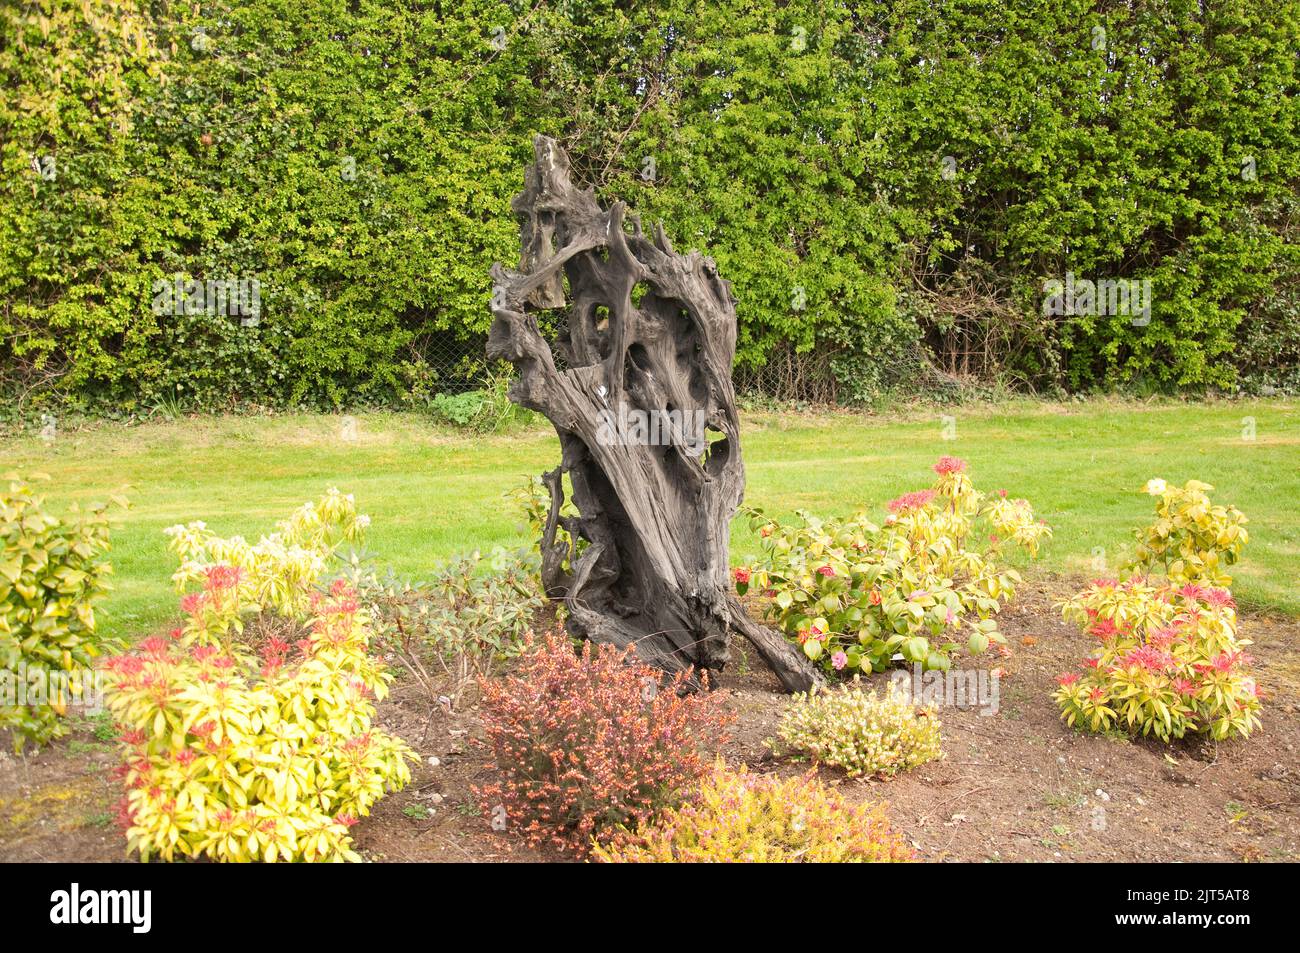 Chêne de tourbière, Ballinasloe, Co Galway, Eire, Irlande. Le chêne de tourbière se compose de racines de chêne-arbre qui ont été enterrées dans des tourbières depuis des milliers d'années, Banque D'Images